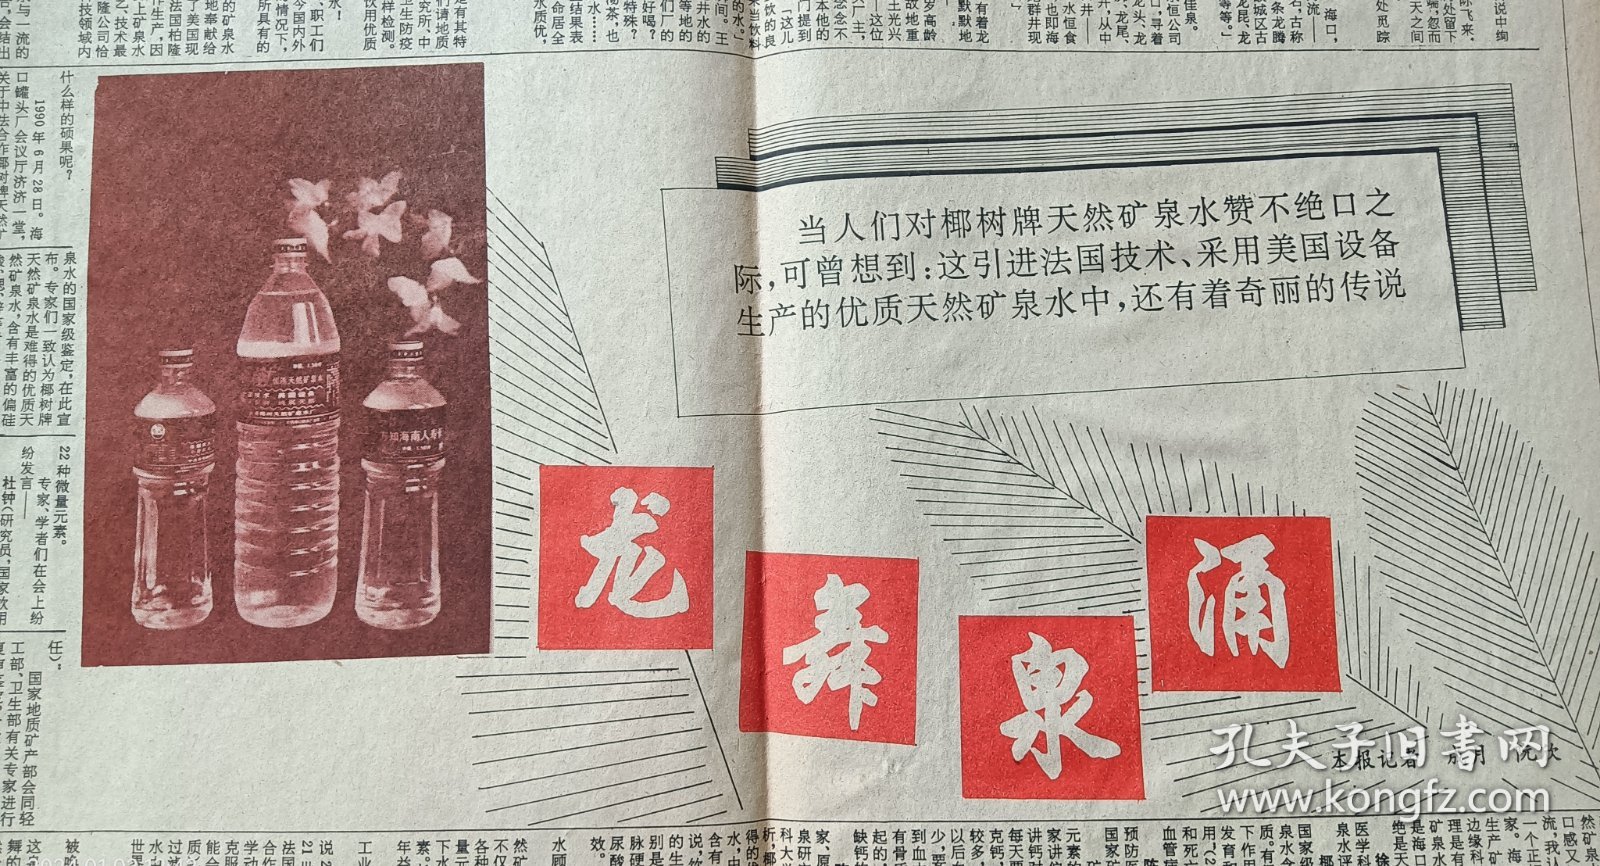 《海南经济报》1990年11月15日，九月二十九，漏印，右翻。椰树牌天然矿泉水。